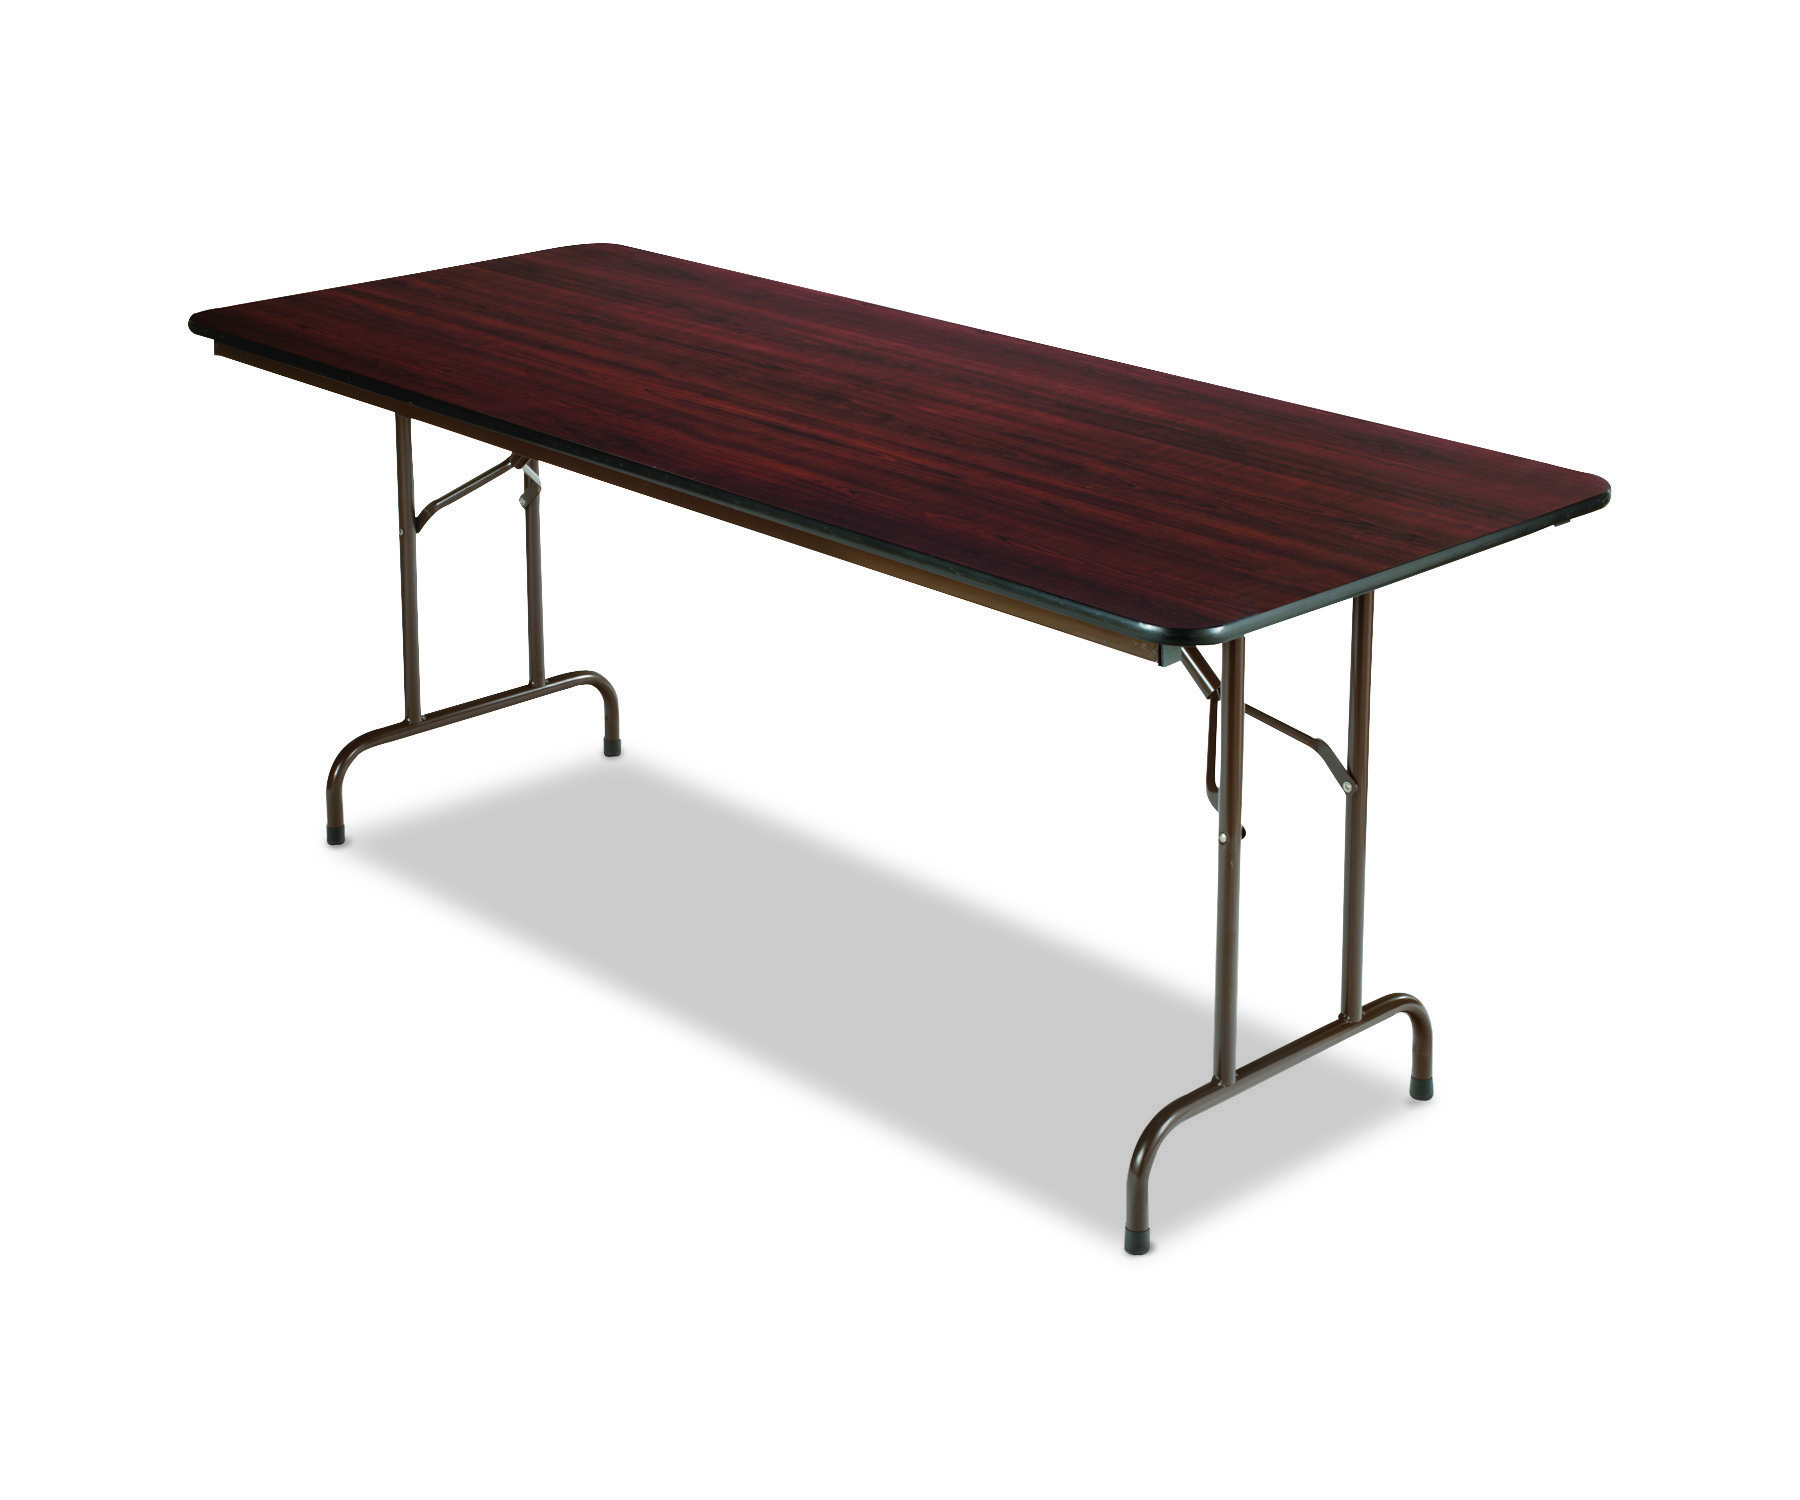 48" Folding Table in Walnut